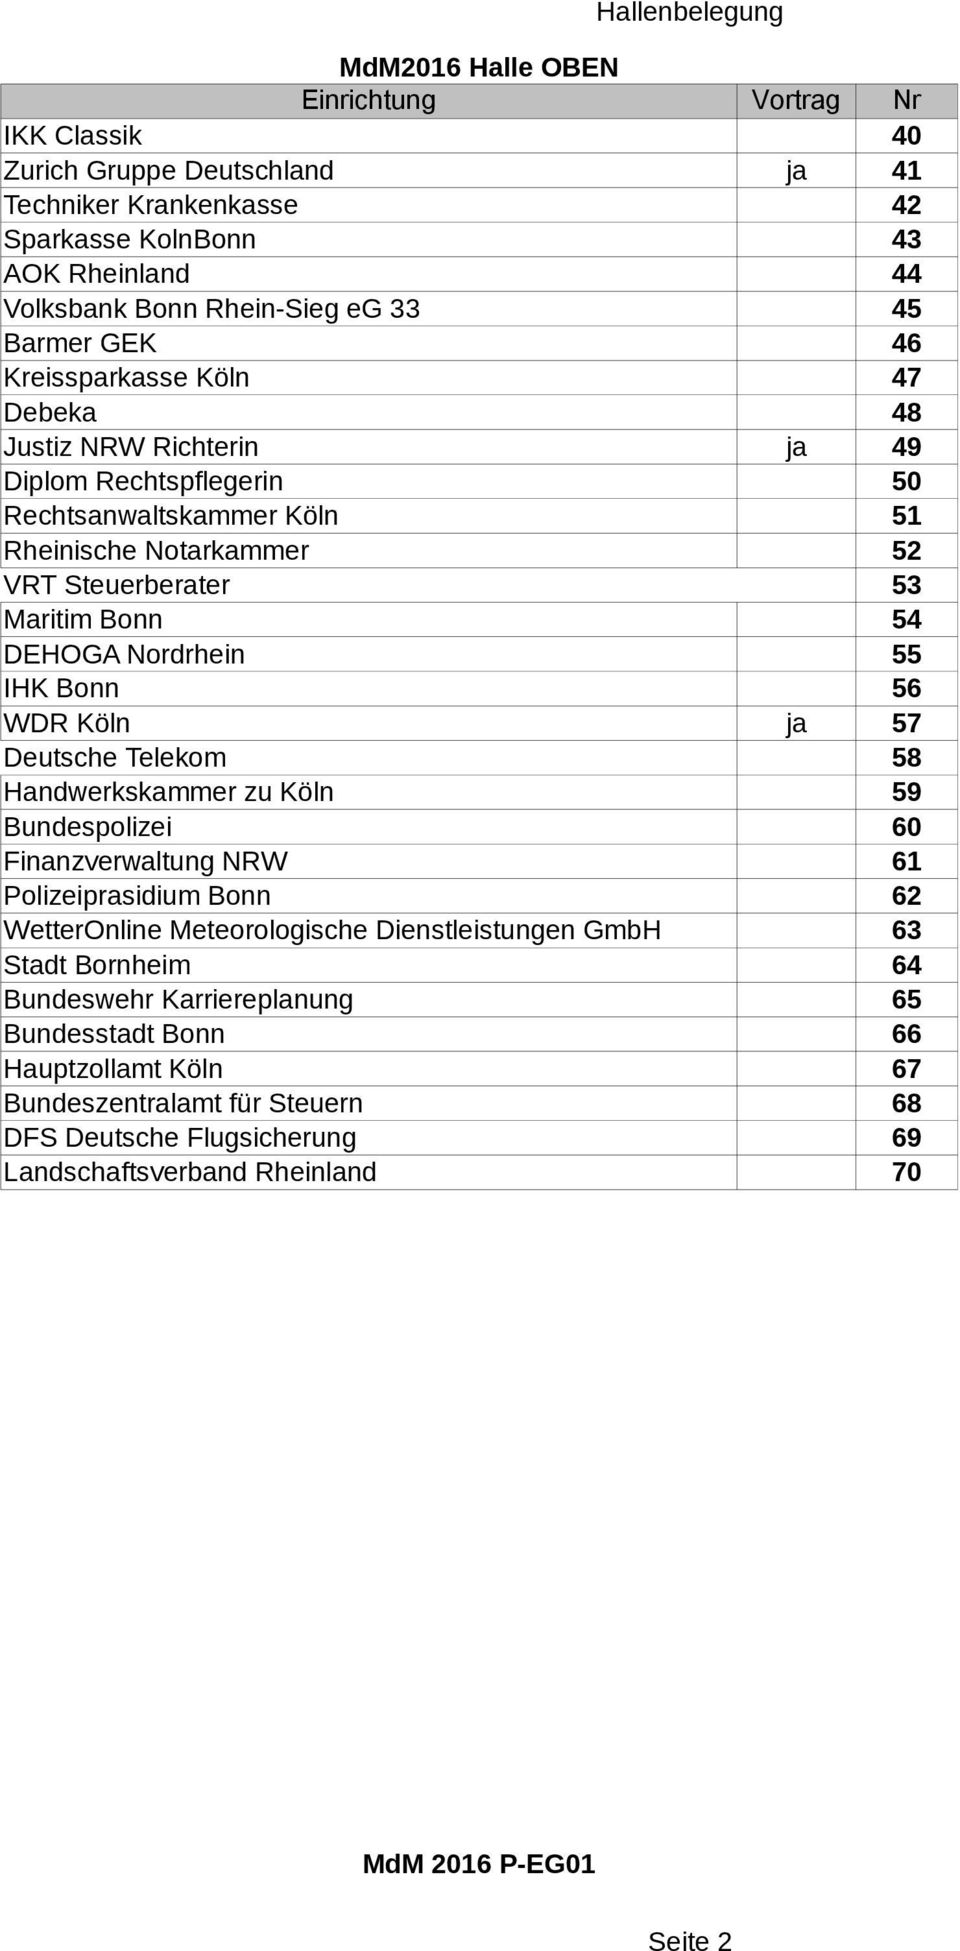 IHK Bonn 56 WDR Köln ja 57 Deutsche Telekom 58 Handwerkskammer zu Köln 59 Bundespolizei 60 Finanzverwaltung NRW 61 Polizeiprasidium Bonn 62 WetterOnline Meteorologische Dienstleistungen GmbH 63